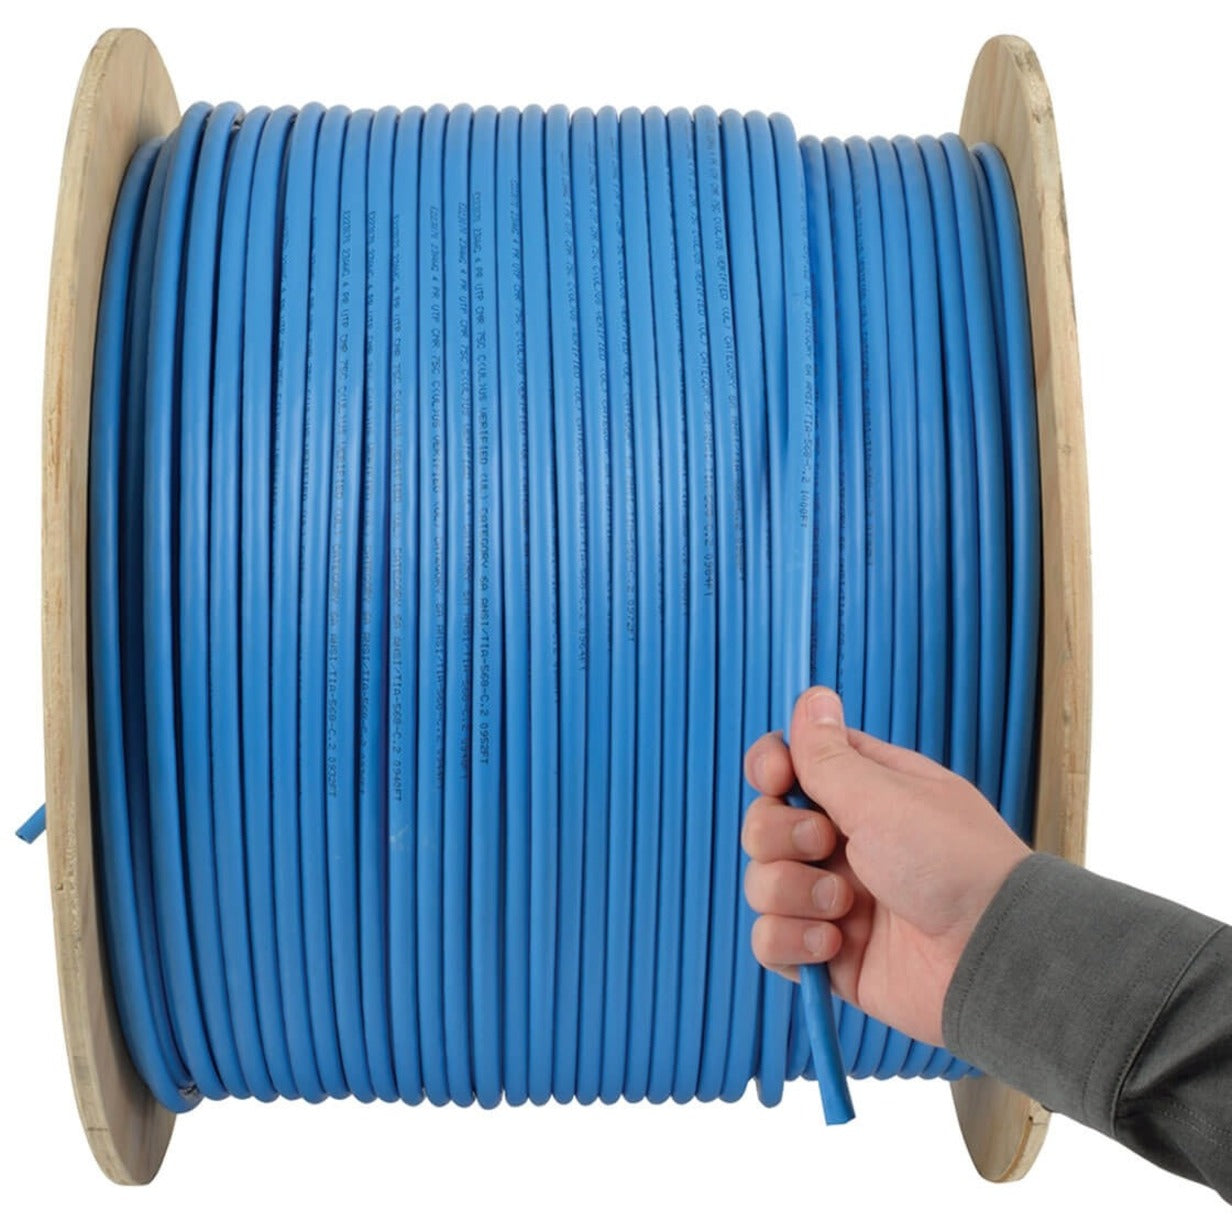 Tripp Lite N223-01K-BL Cat6a 10G Bulk Solid-Core PVC Cable, Blue, 1000 ft